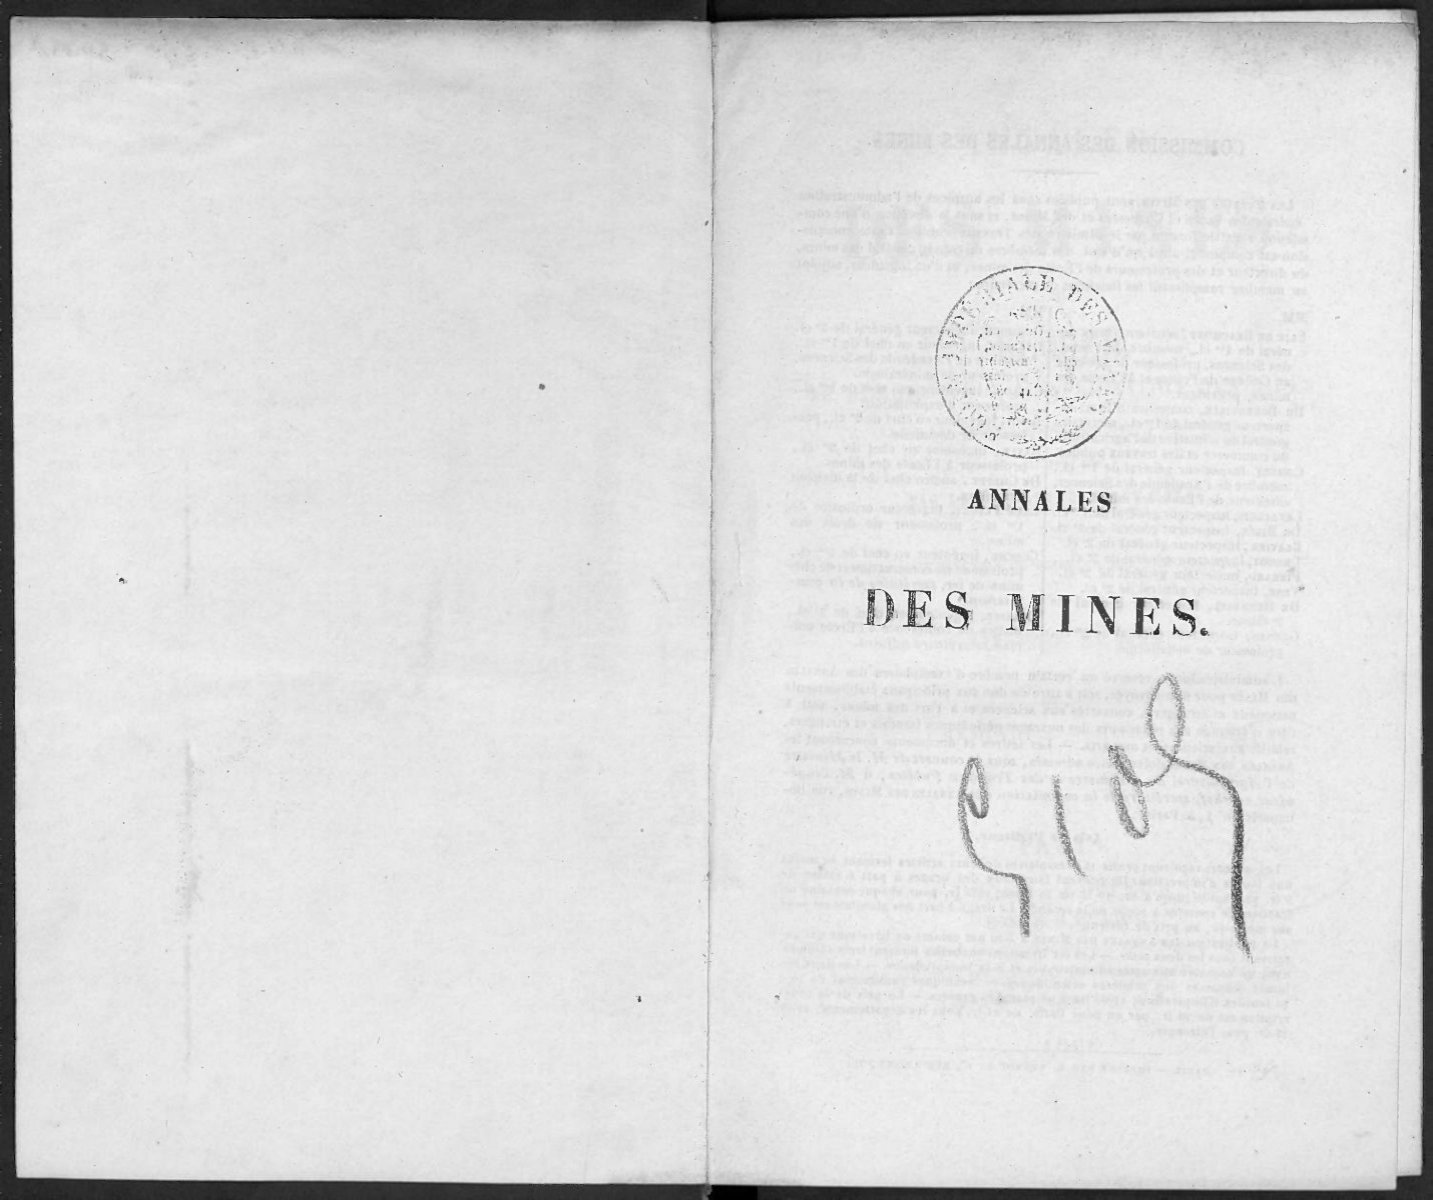 ANNALES - Journal des mines et Annales des mines 1794-1881.